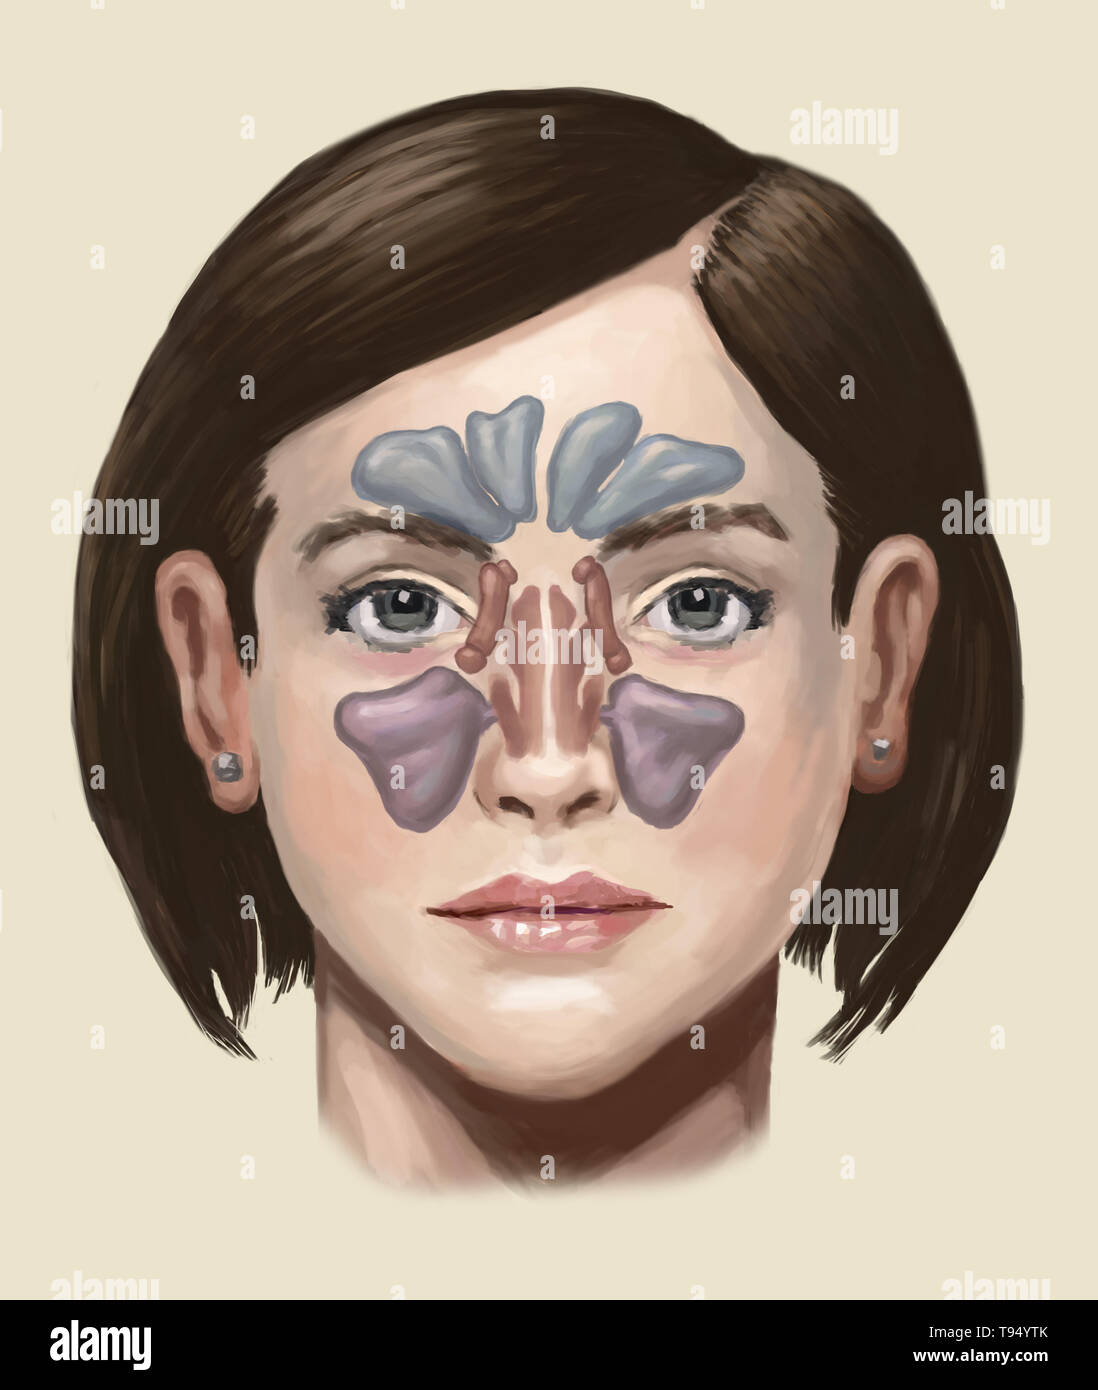 Illustration des sinus. De haut en bas, ils comprennent : le sinus frontal, sinus sphénoïdal l, le sinus ethmoïde, et le sinus maxillaire. Banque D'Images